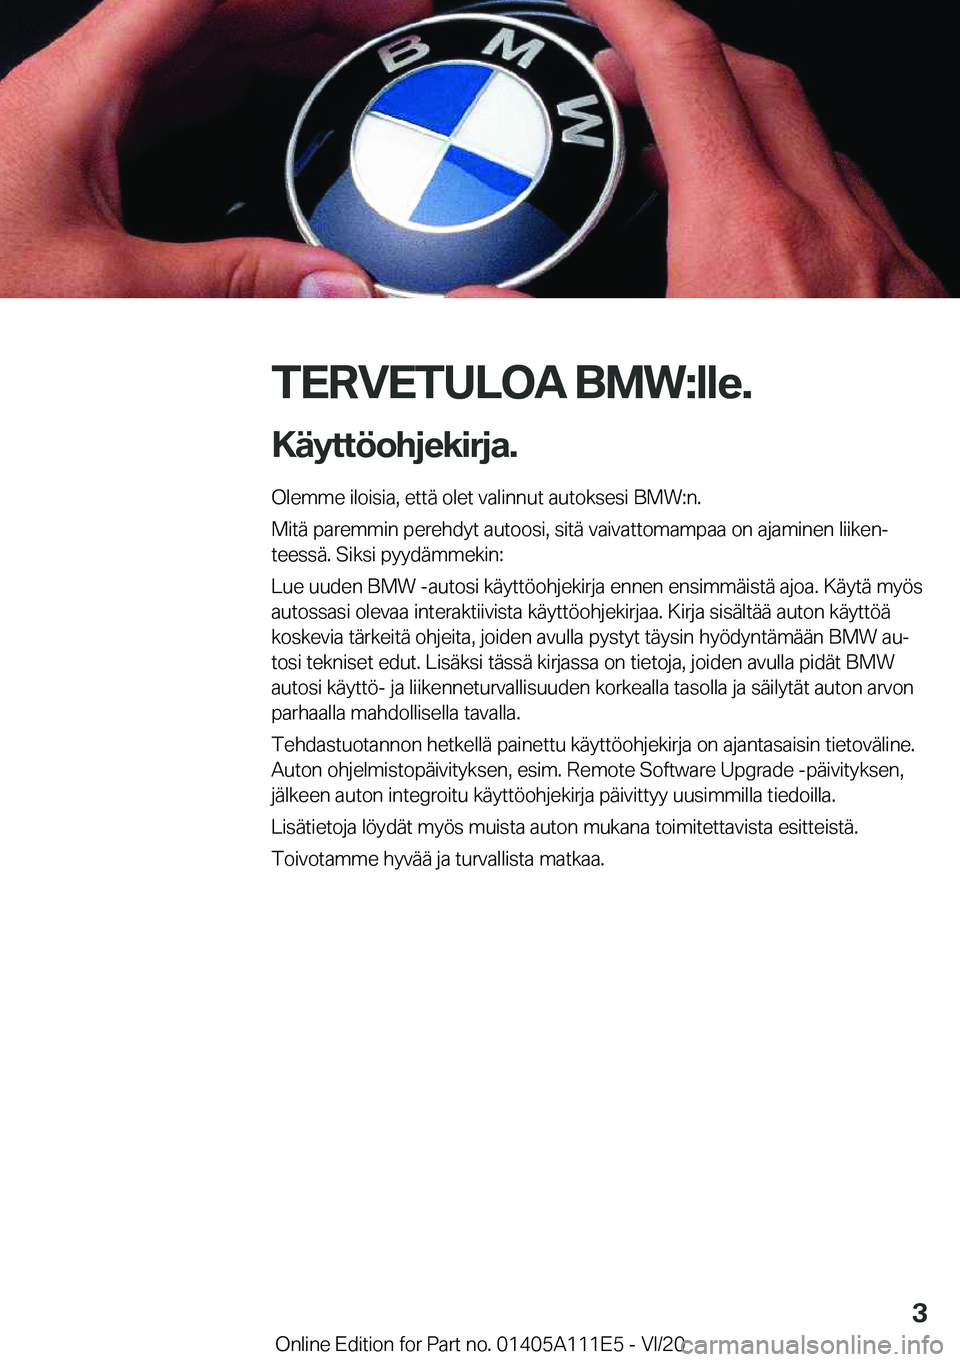 BMW 3 SERIES SEDAN PLUG-IN HYBRID 2021  Omistajan Käsikirja (in Finnish) �T�E�R�V�E�T�U�L�O�A��B�M�W�:�l�l�e�.�K�